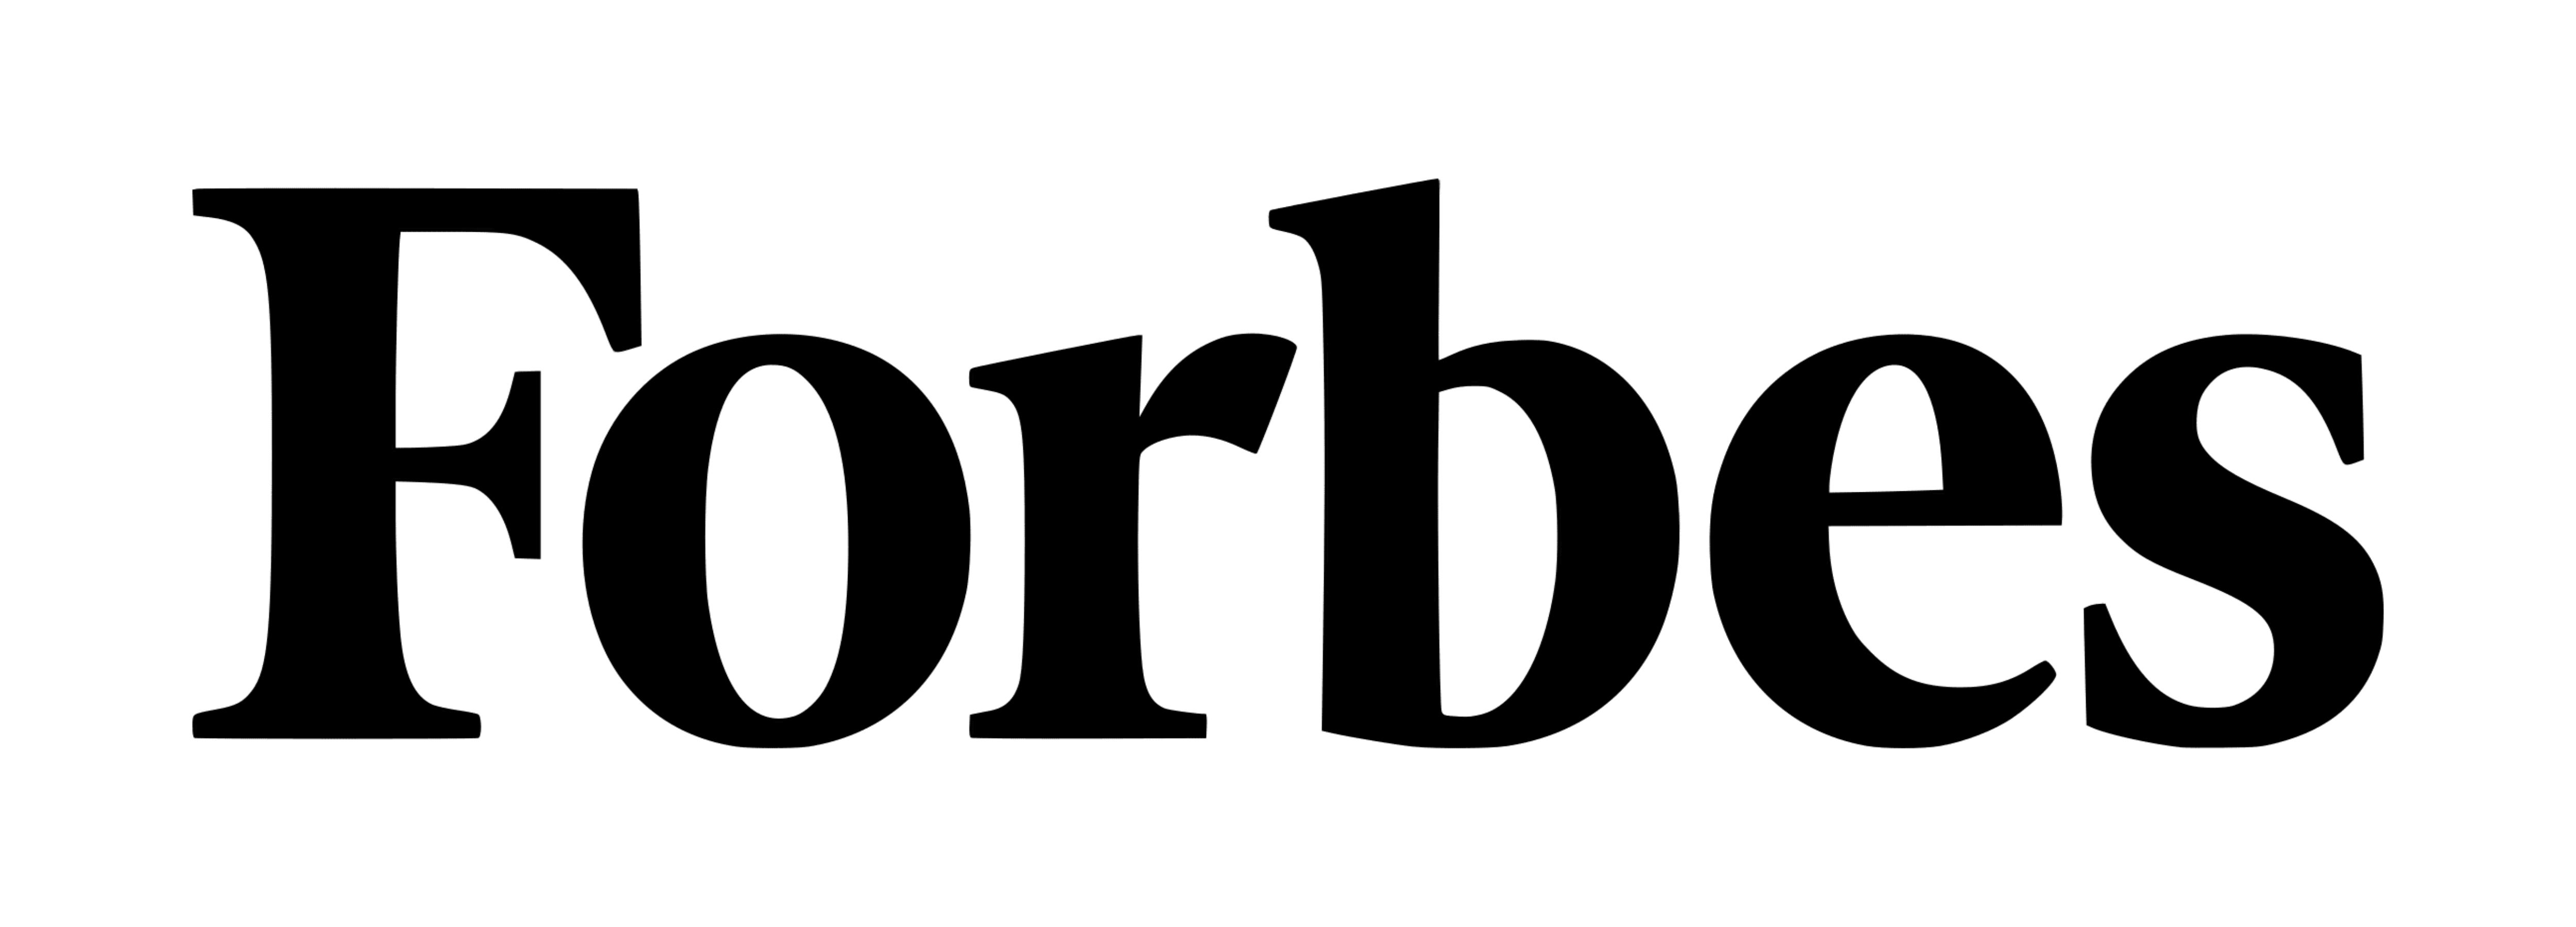 логотип forbes